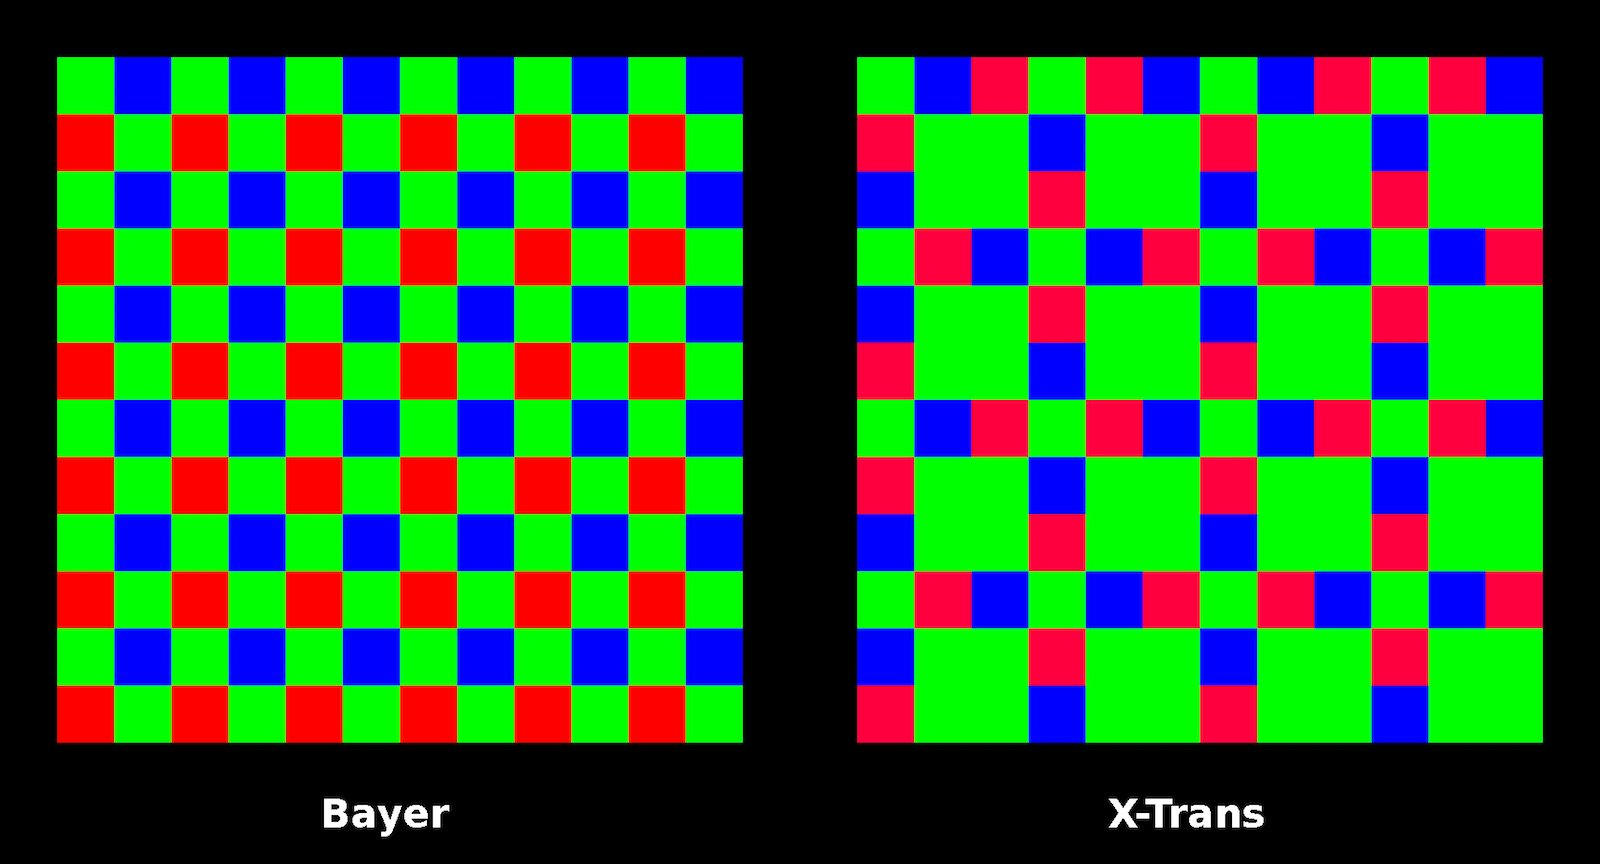 bayer pattern vs x-trans matrix